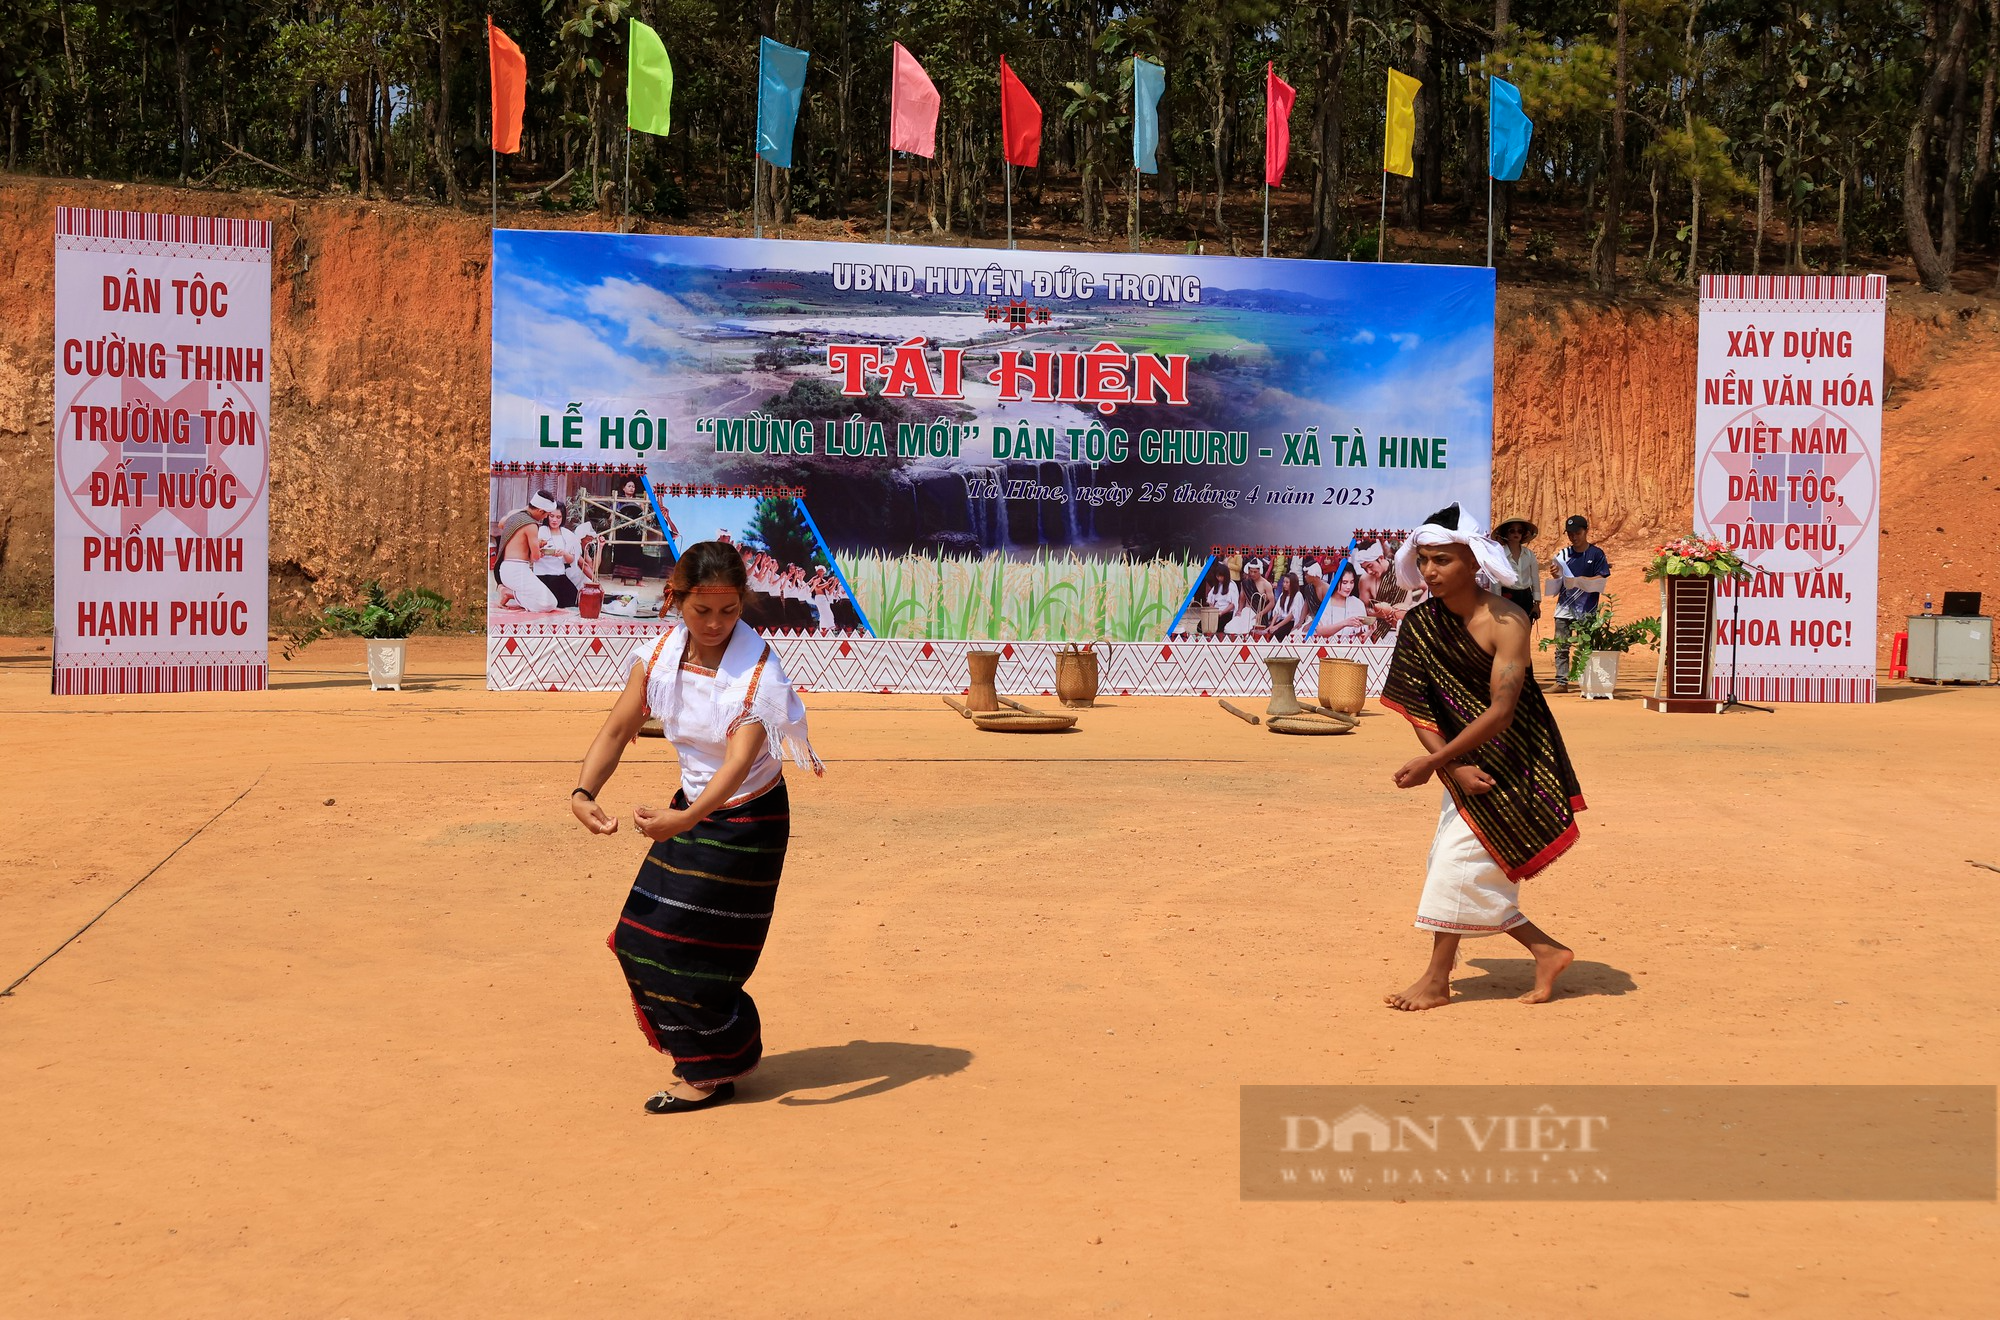 Độc đáo Lễ hội Mừng lúa mới của người Chu Ru ở Lâm Đồng với nghi lễ đâm trâu - Ảnh 5.